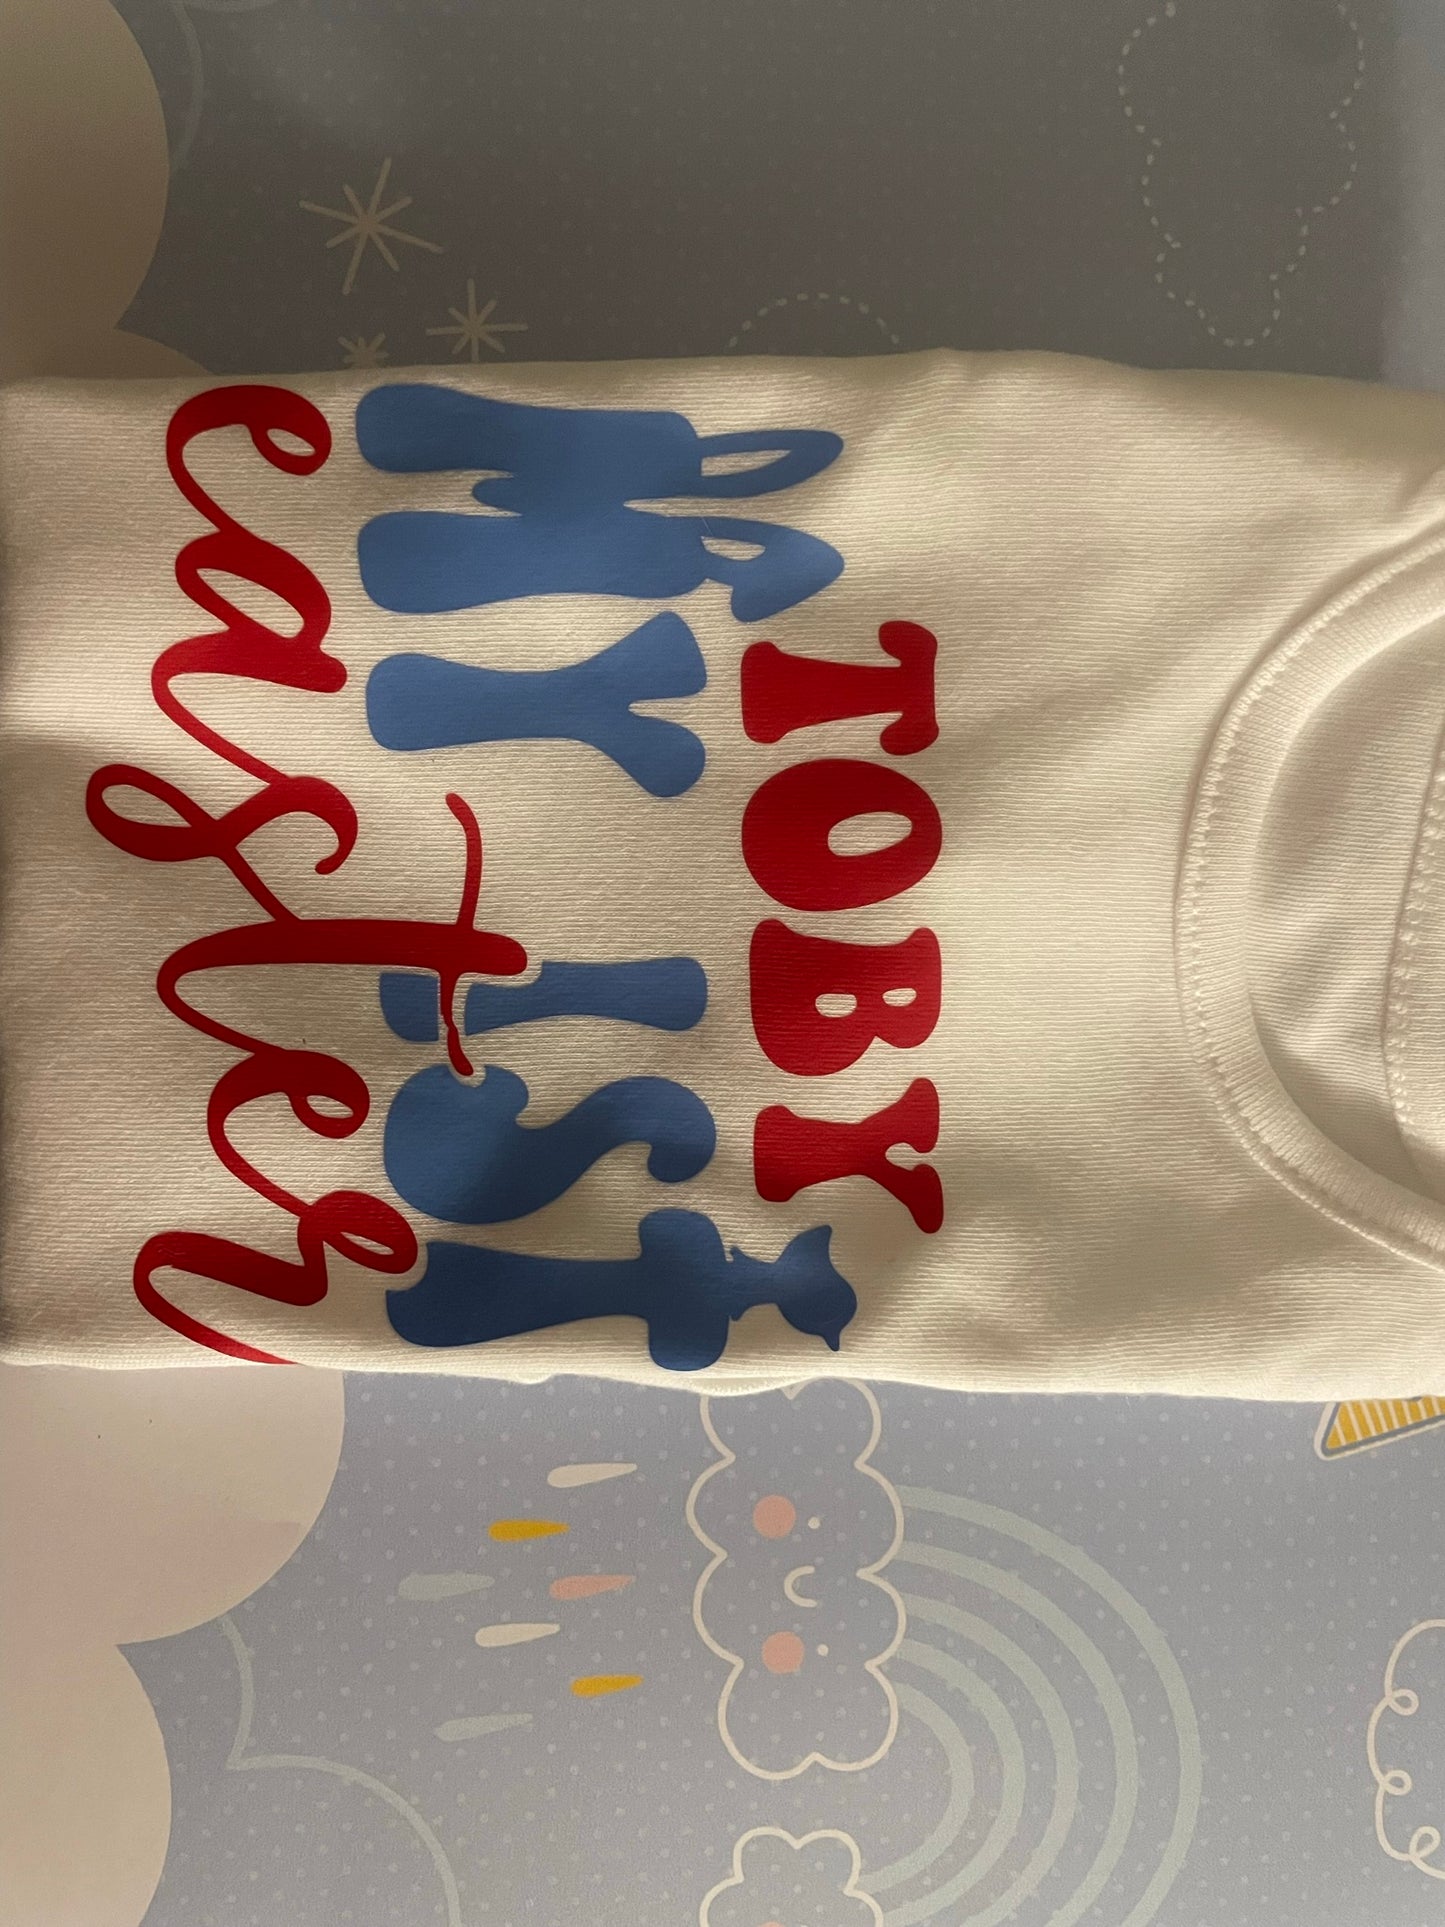 Slogan Baby Vest